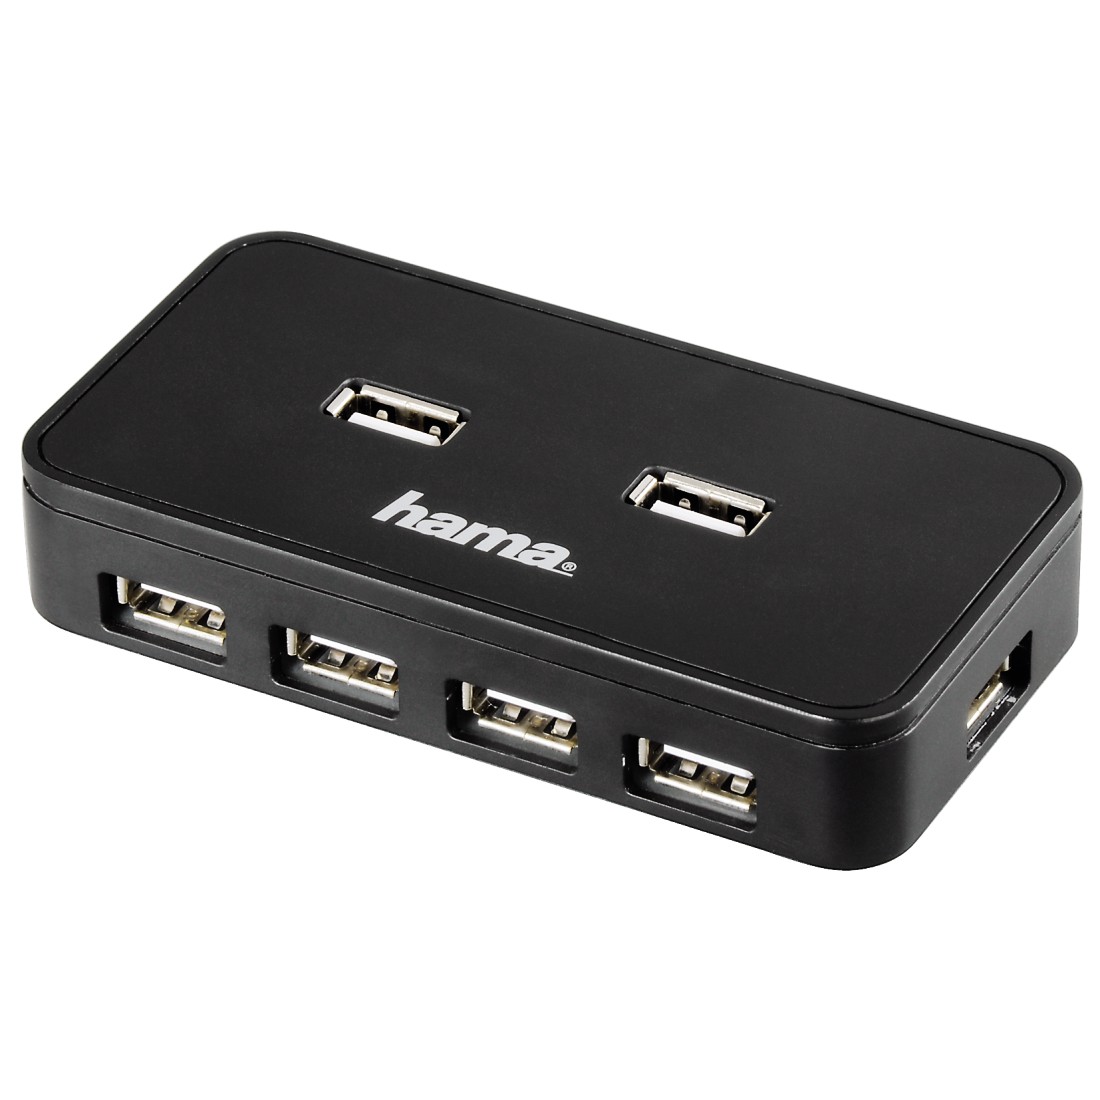 Купить usb 7. Разветвитель USB 2.0 Hama active1:7 7порт. Черный (00039859). USB-хаб Hama "h-39859". USB-концентратор Defender Quadro Infix (83504), разъемов: 4. USB-хаб Hama 39859.